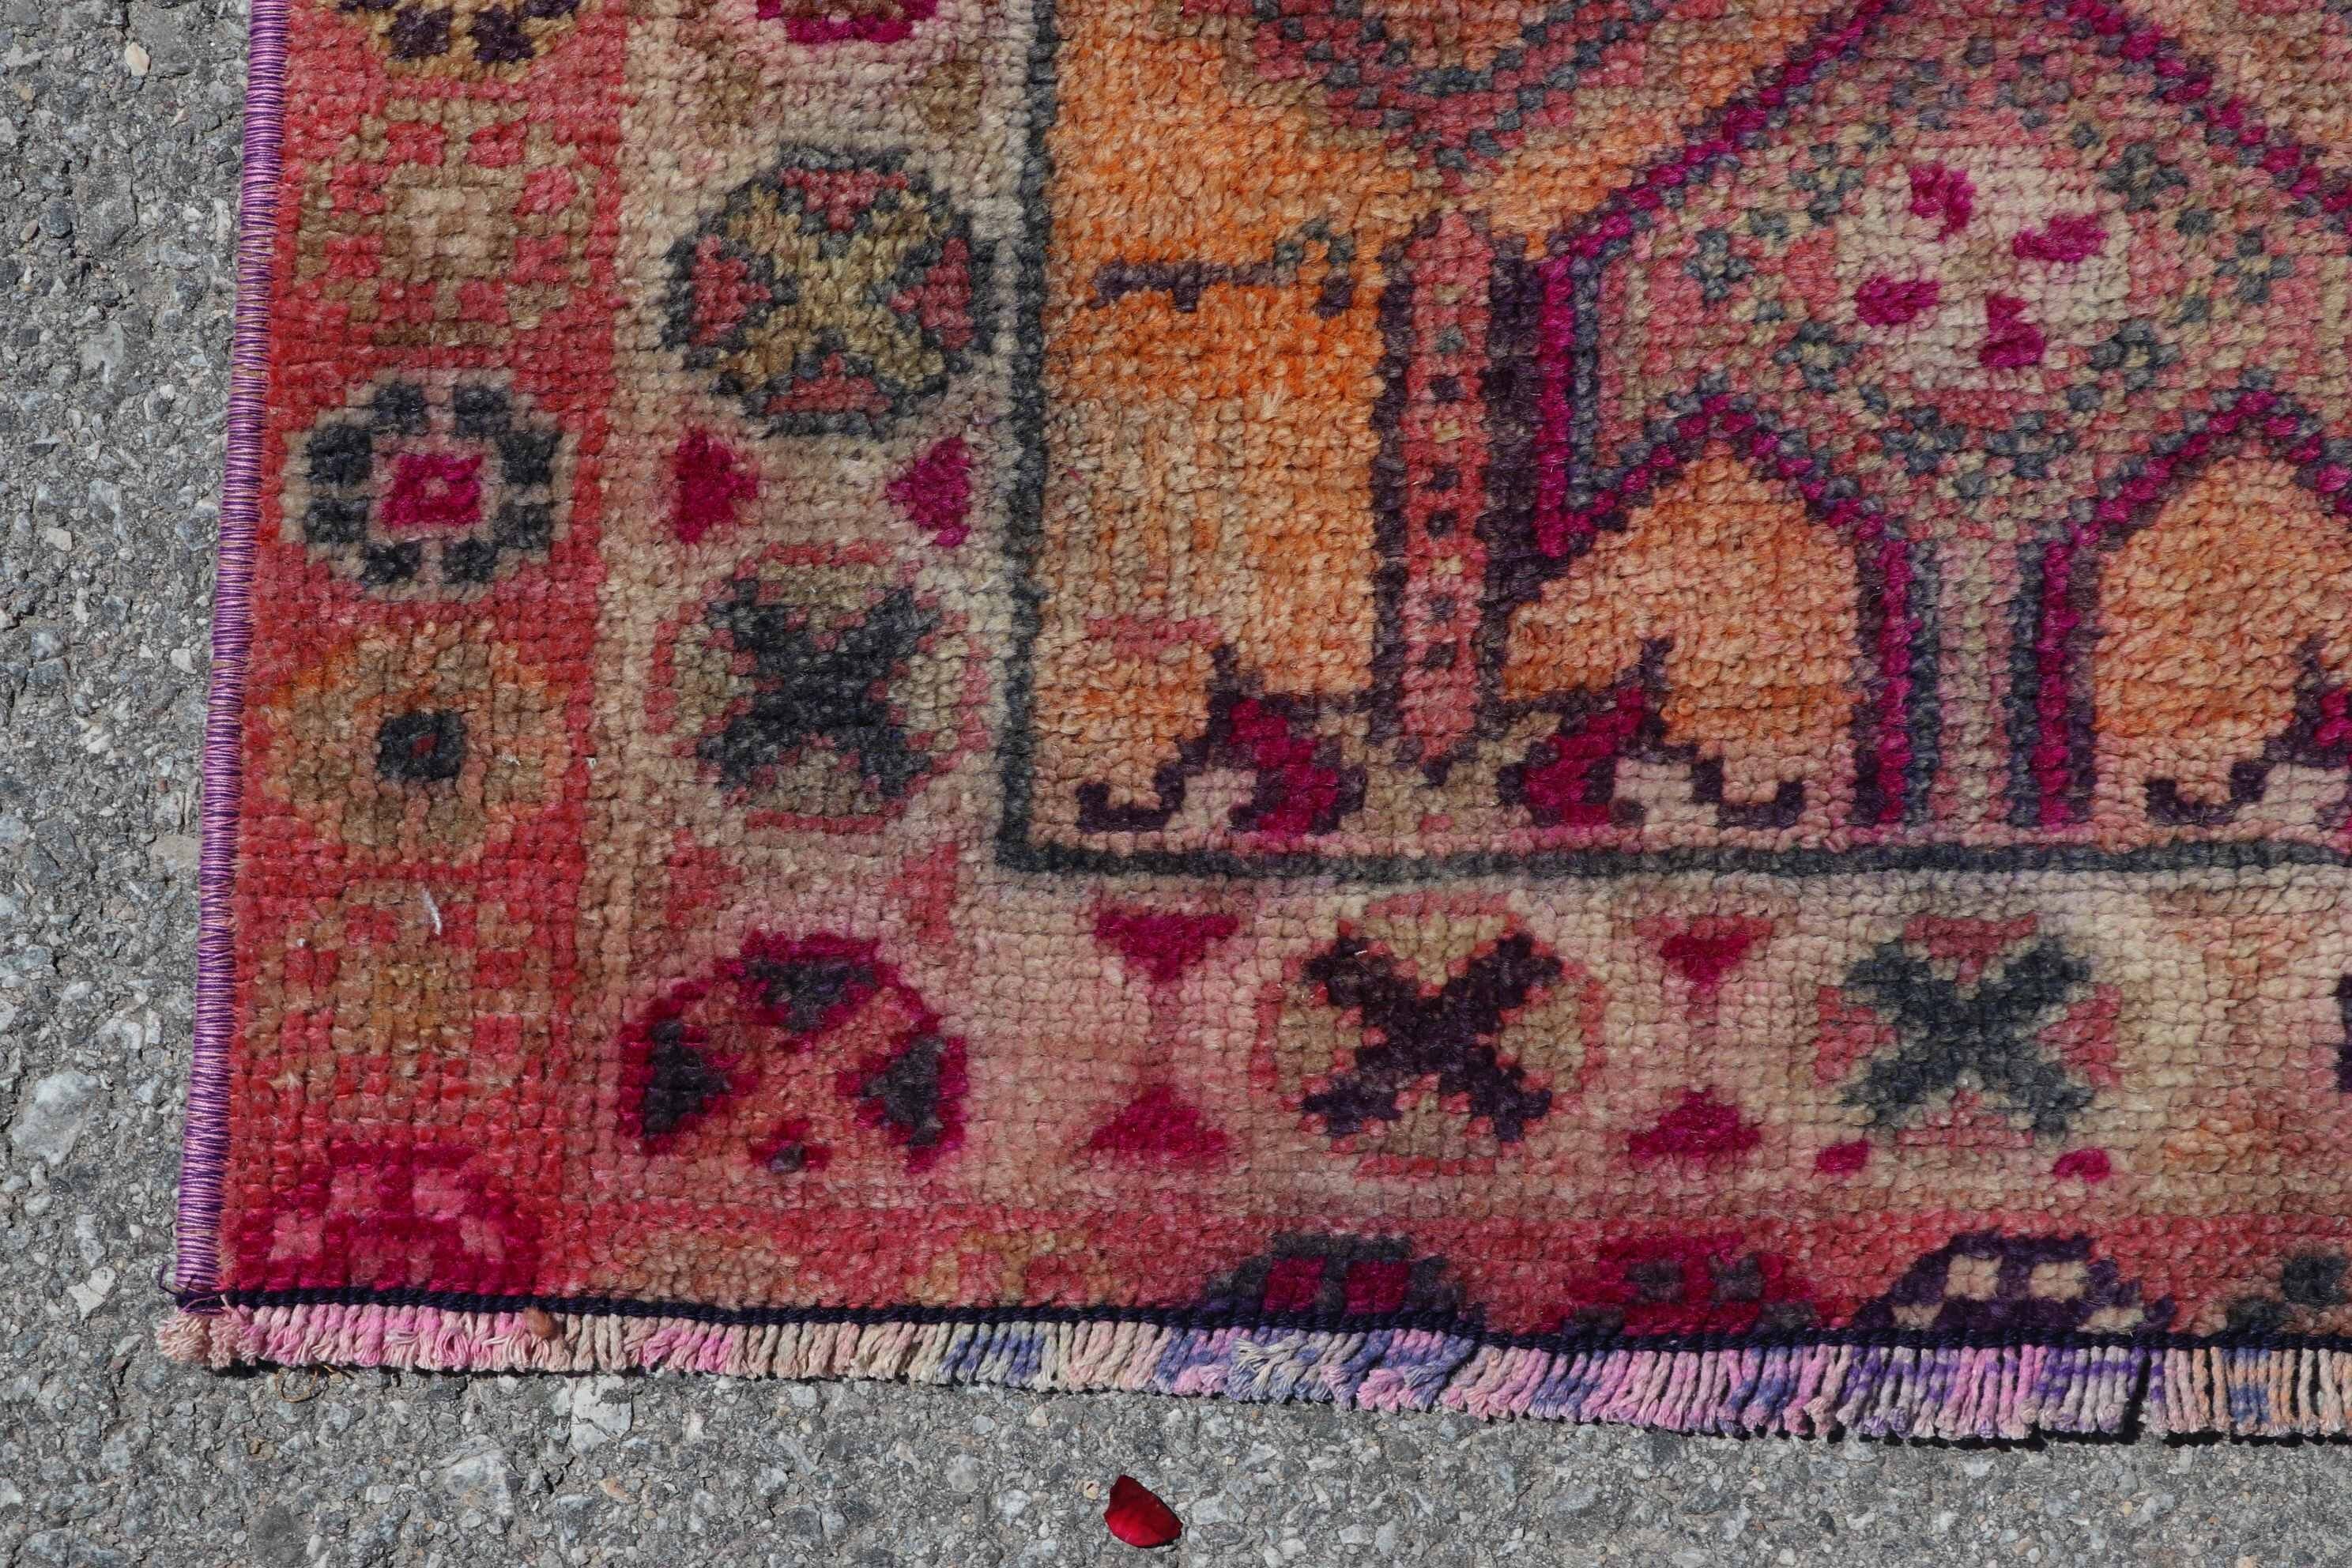 Floor Rugs, Tribal Rugs, Turkish Rug, Stair Rug, Pink Kitchen Rug, Rugs for Hallway, Home Decor Rugs, 2.6x11.8 ft Runner Rugs, Vintage Rugs